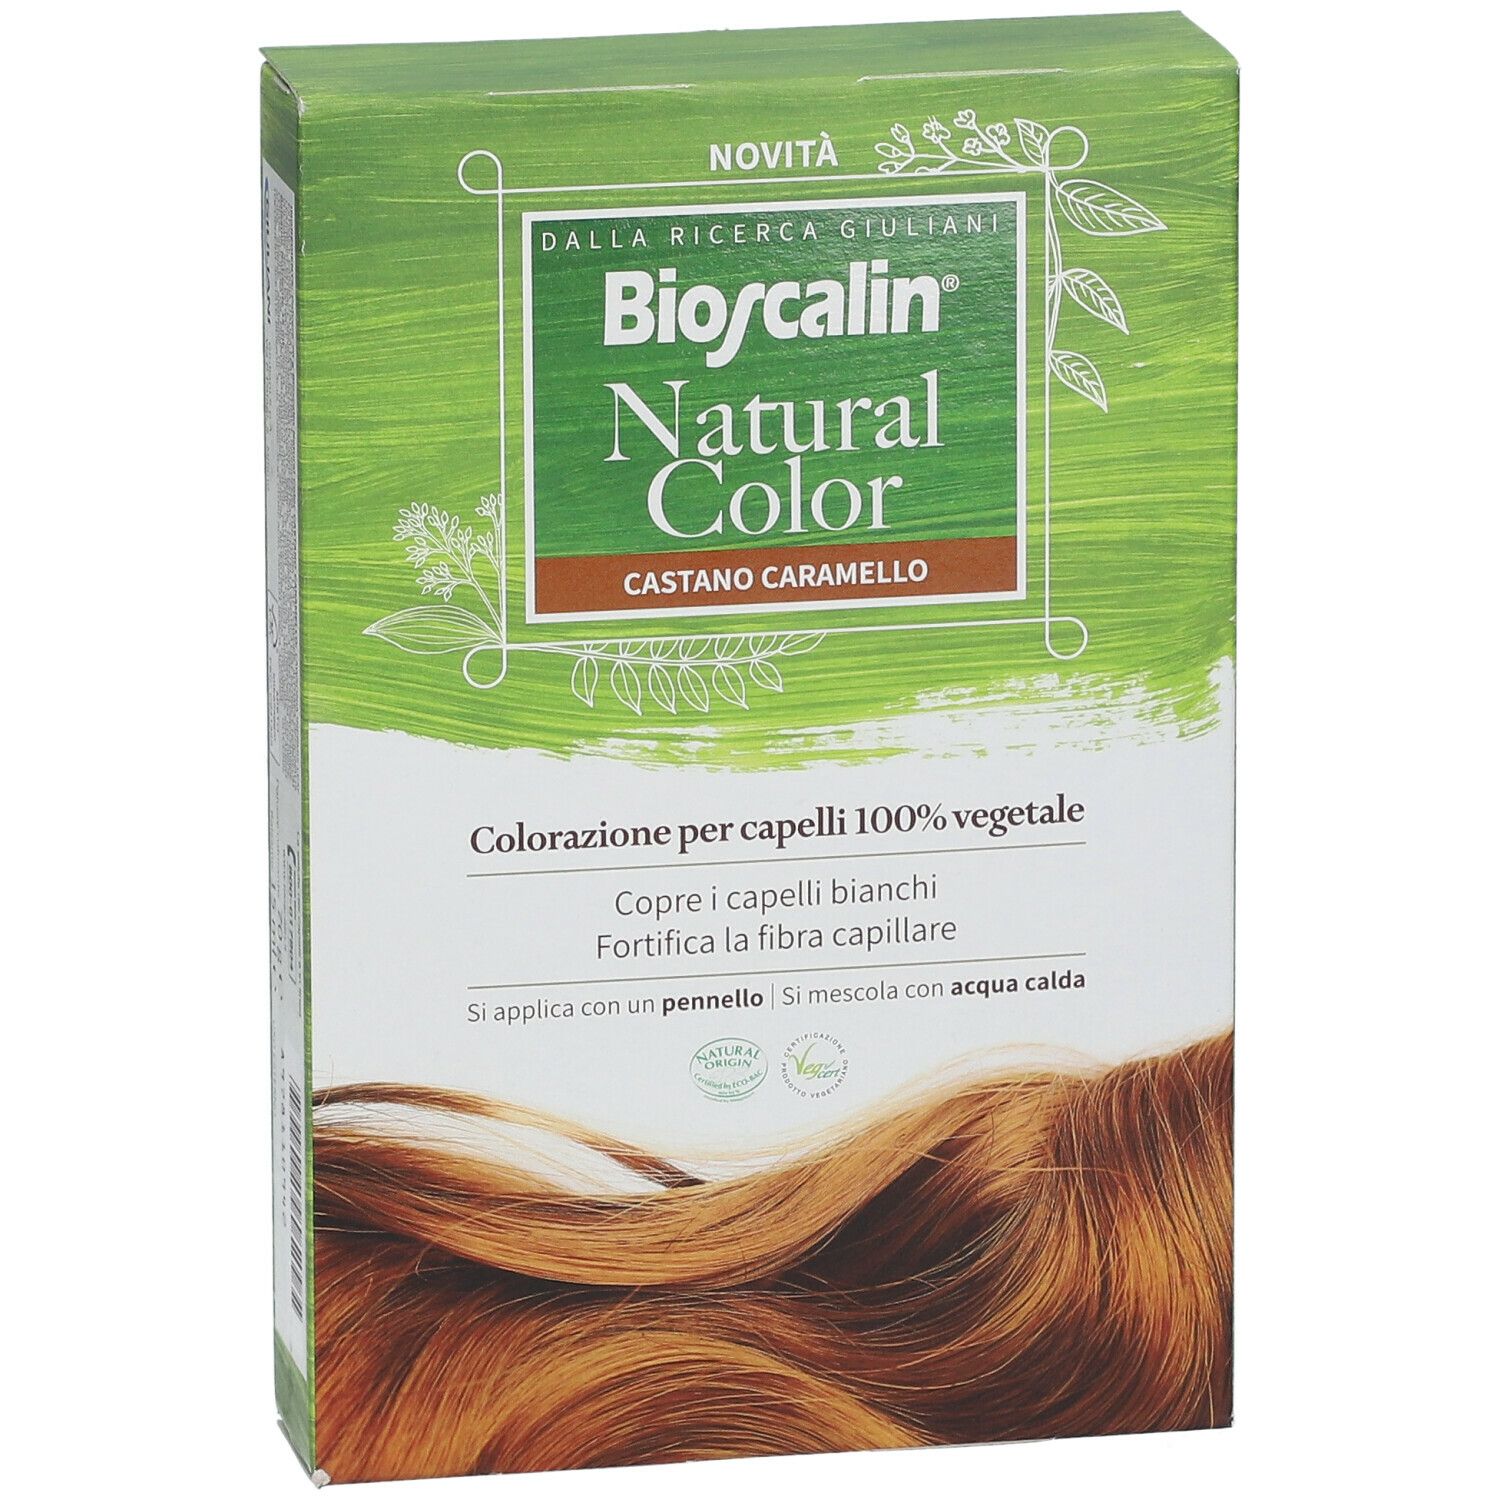 Bioscalin® Natural Color Castano Caramello